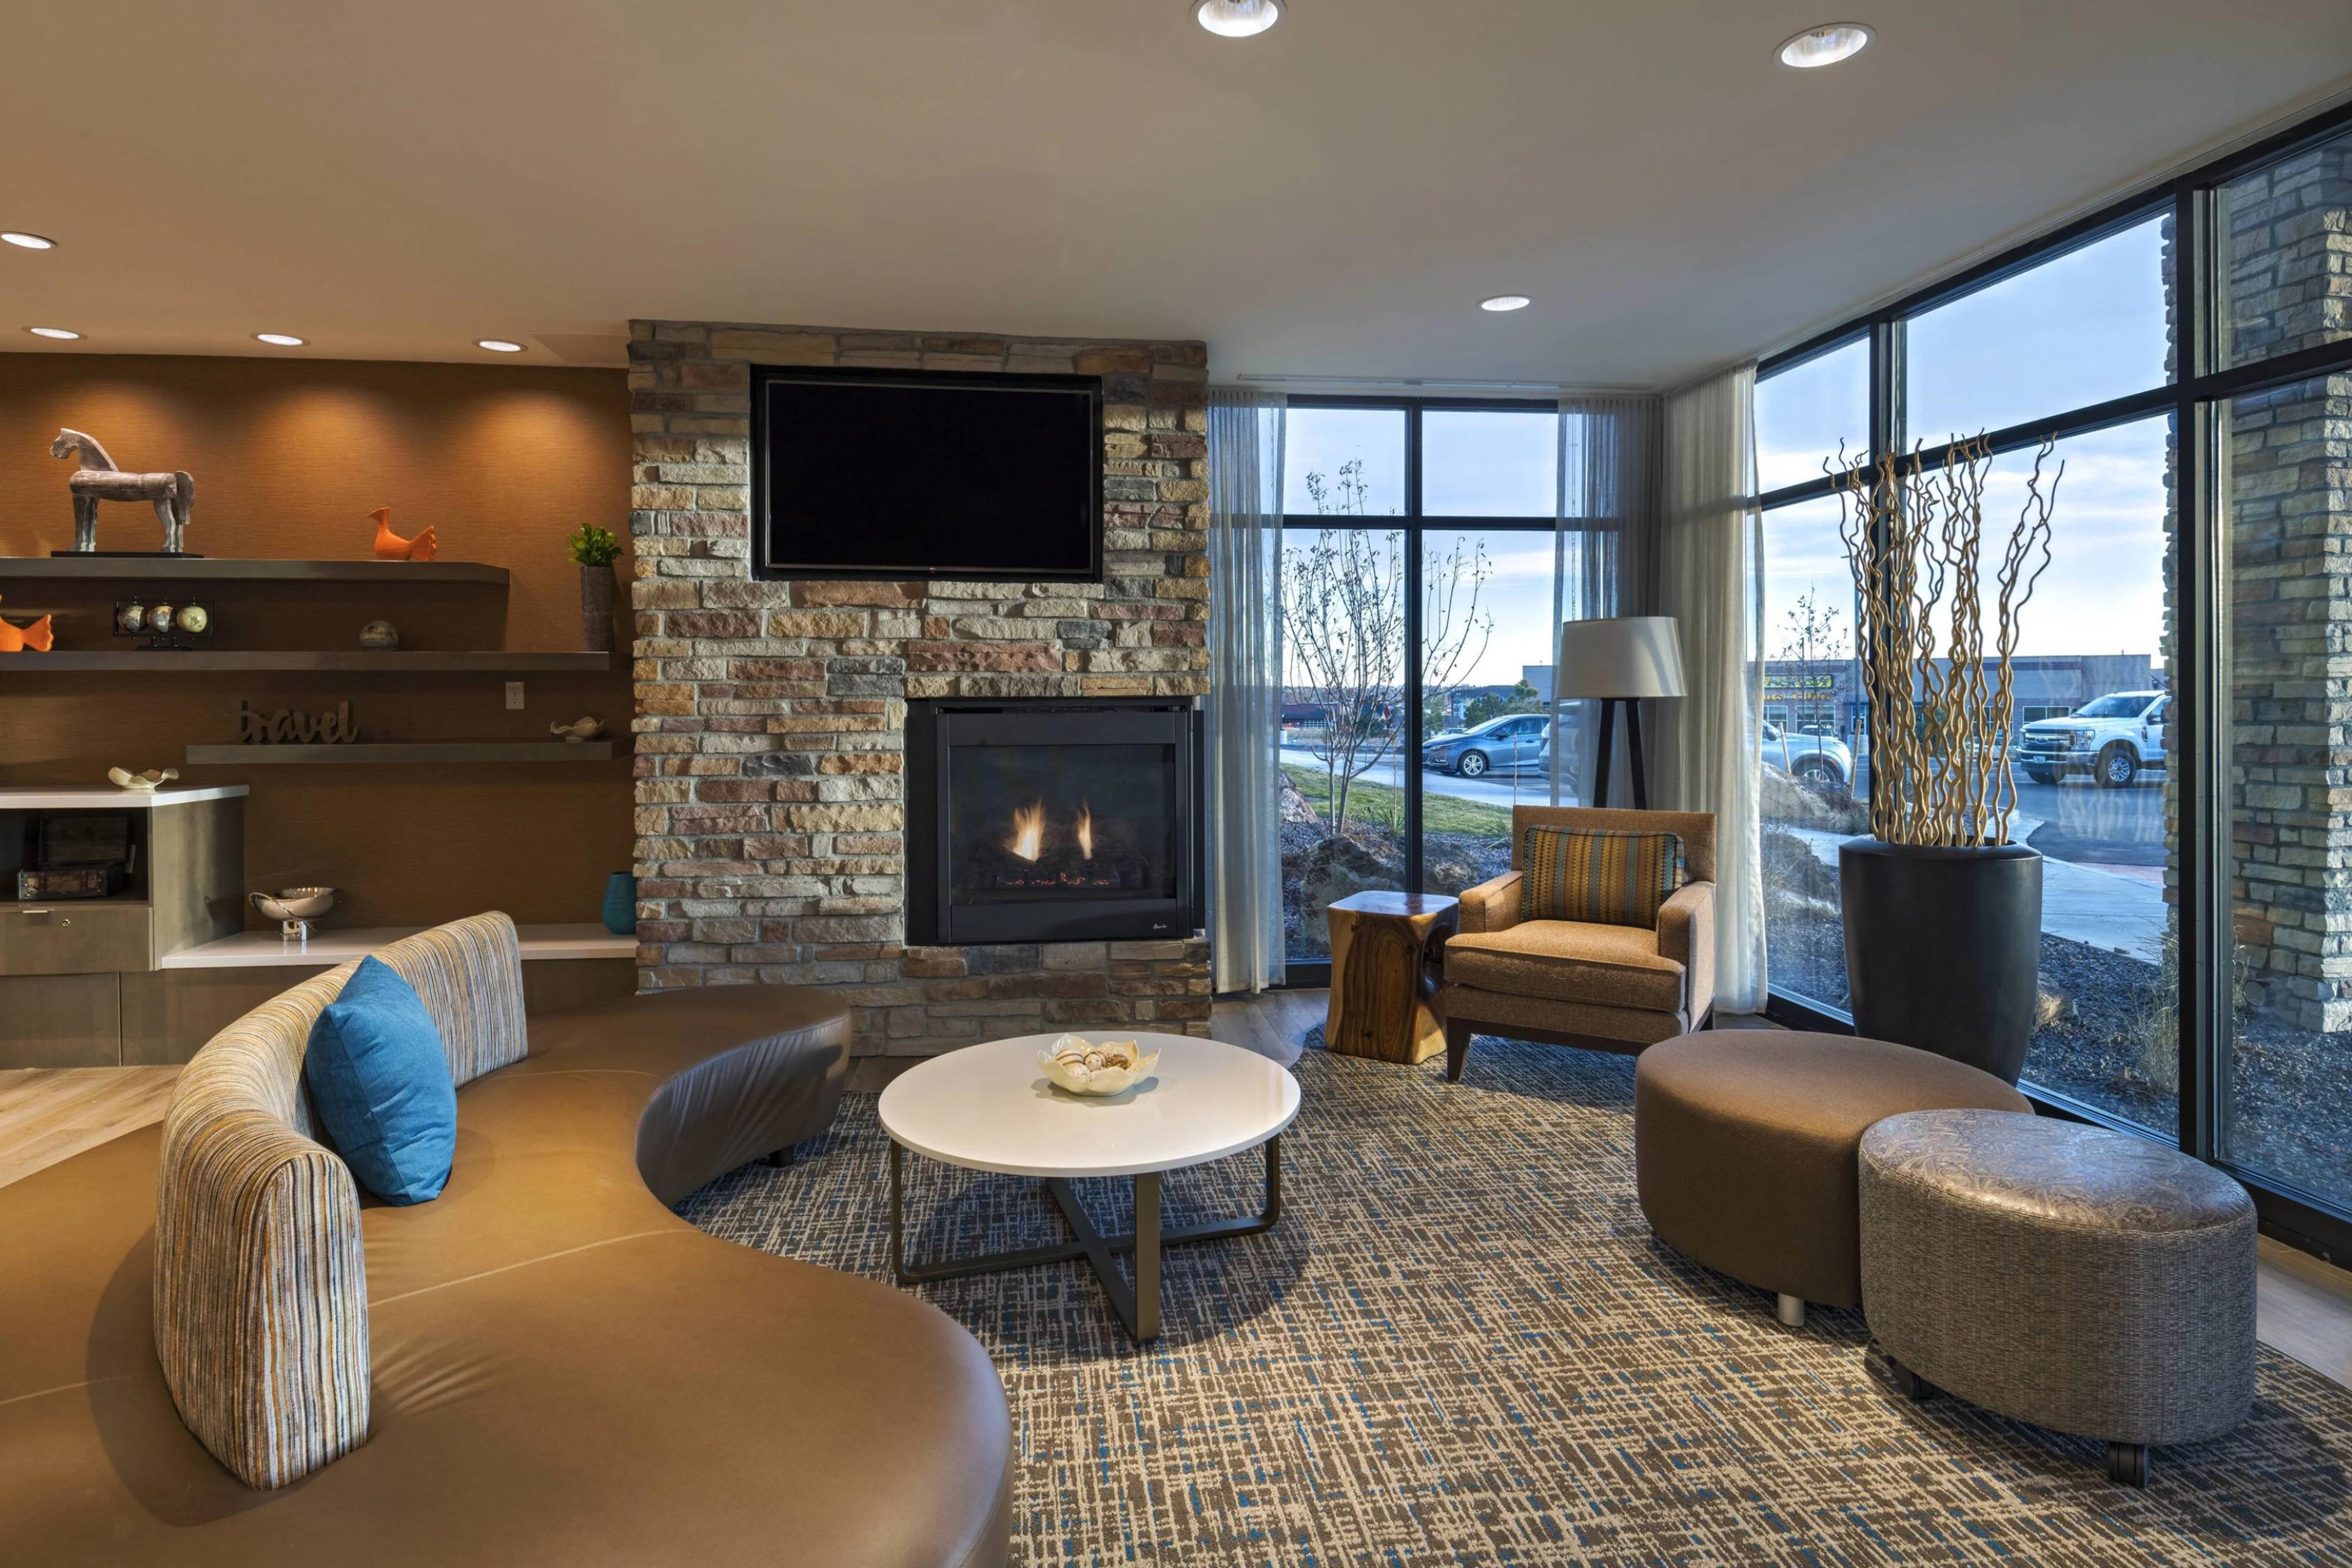 Fairfield Inn & Suites by Marriott Colorado Springs East/Ballpark